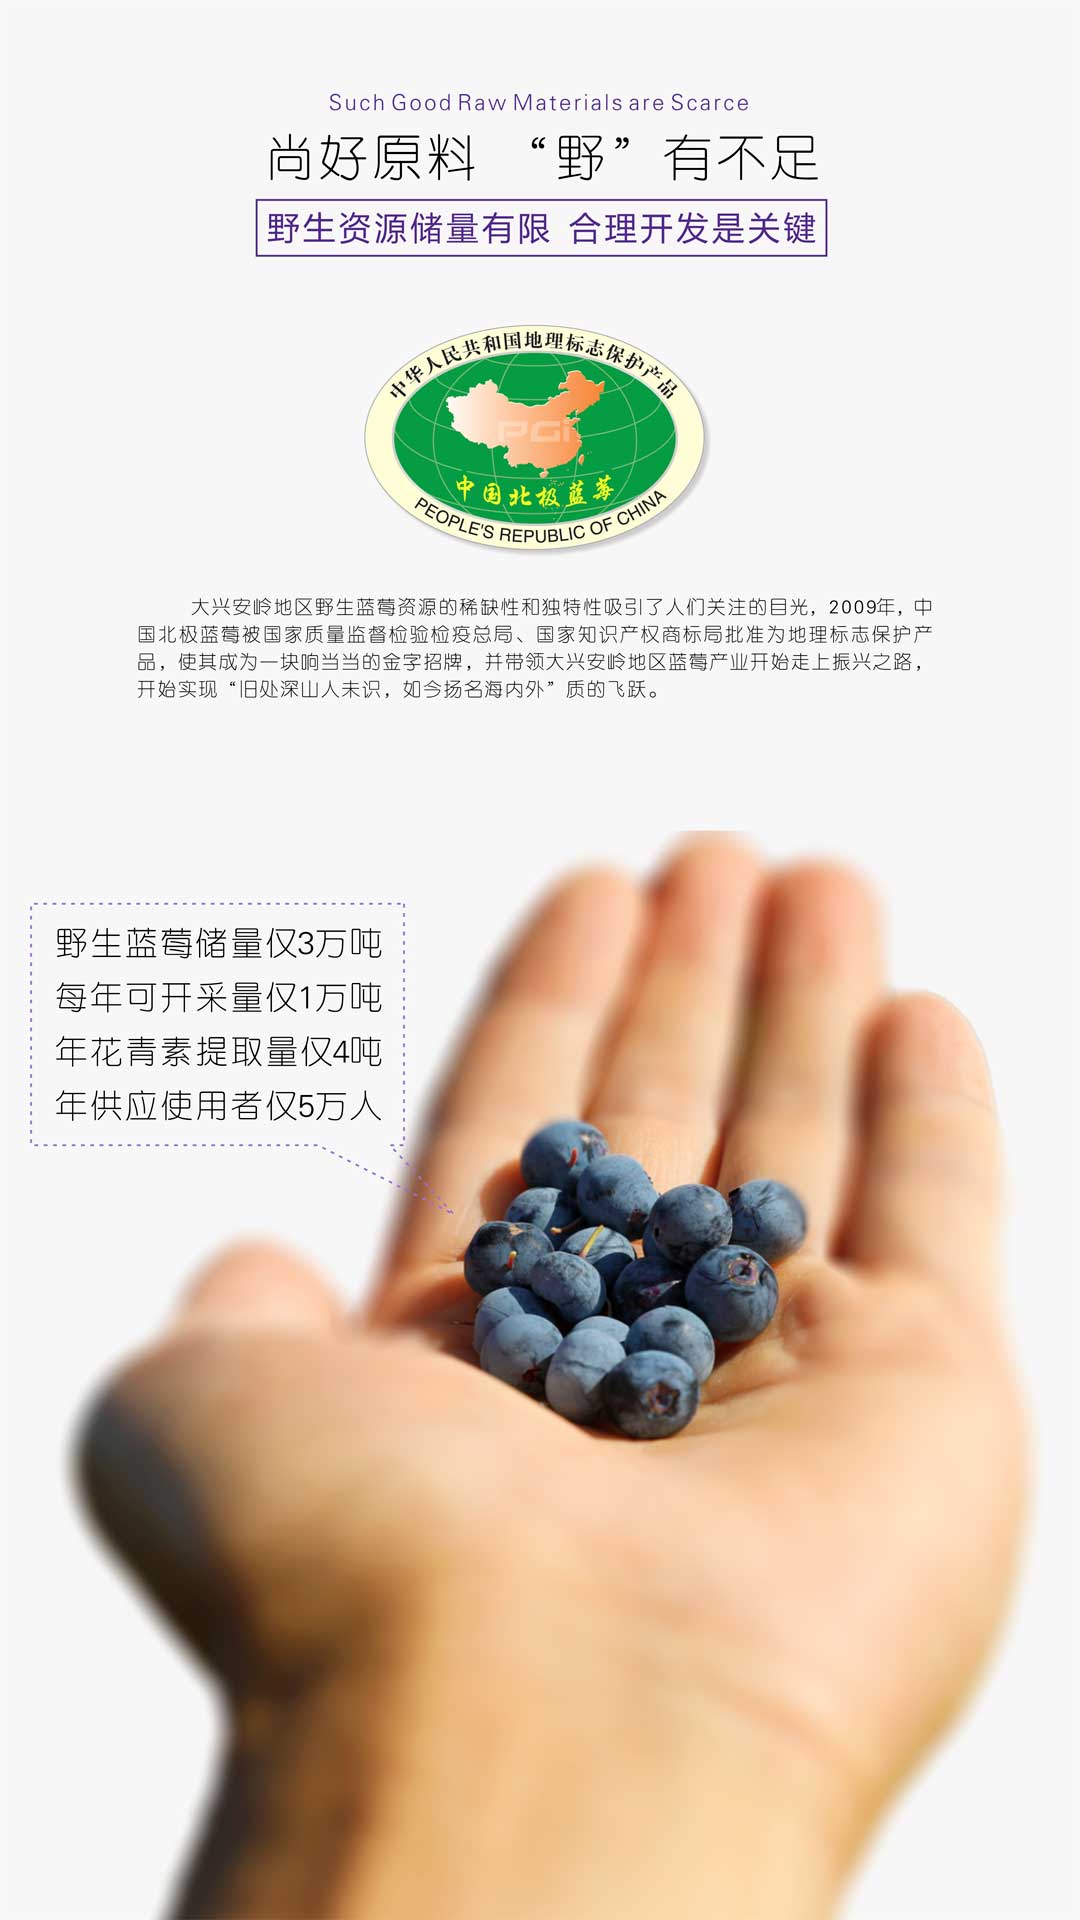 ACY-至臻尚品-D9动力-蓝莓黄杞参精片6x28产品介绍-06.jpg